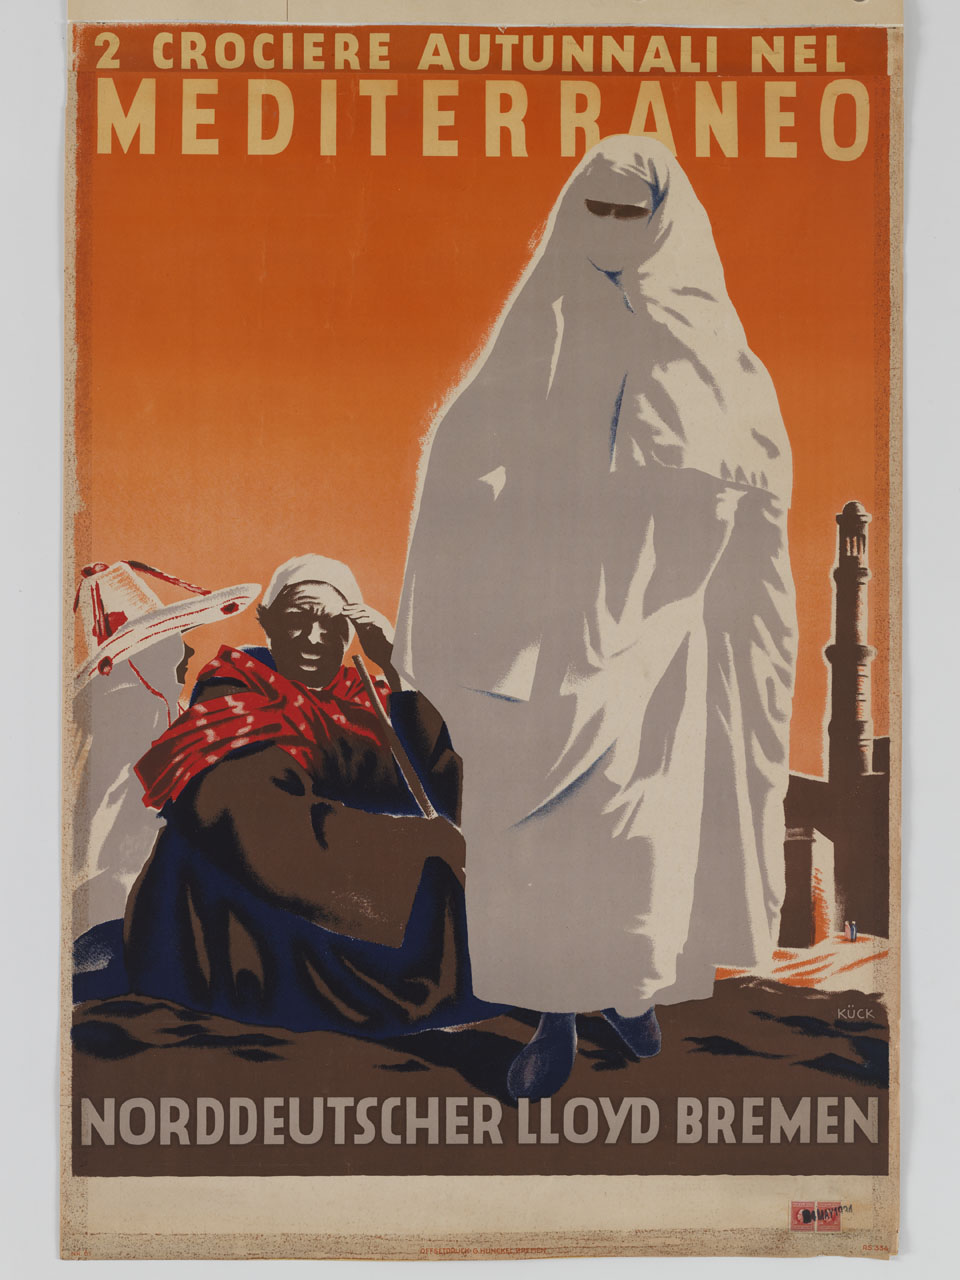 donna con niqab bianco cammina accanto a un uomo e a una donna seduti a terra sullo sfondo di un minareto (manifesto) di Kück Fritz (sec. XX)